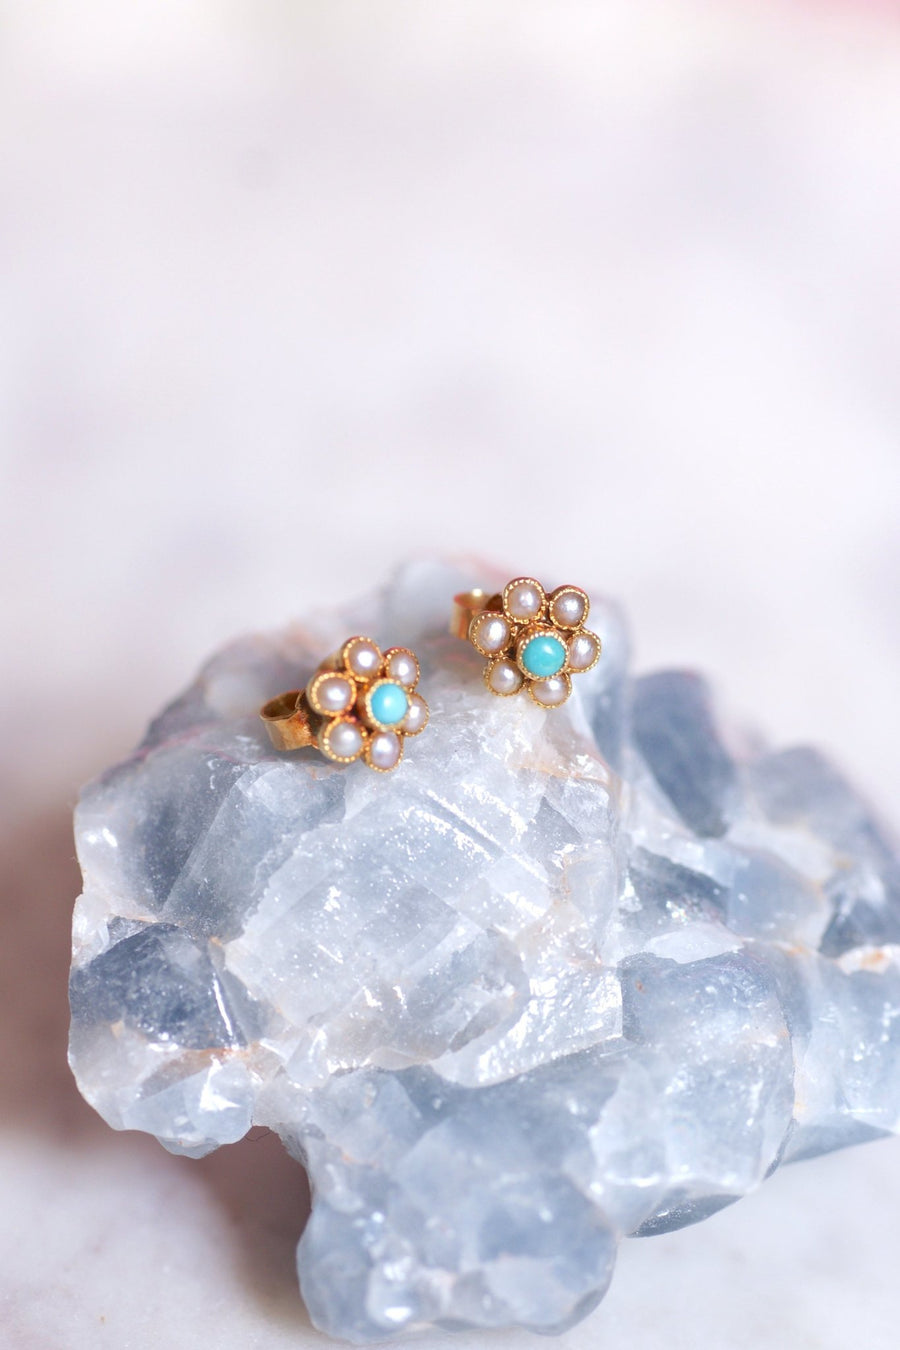 Boucles d'oreilles fleurs vintage en or, perles, et turquoises - Galerie Pénélope